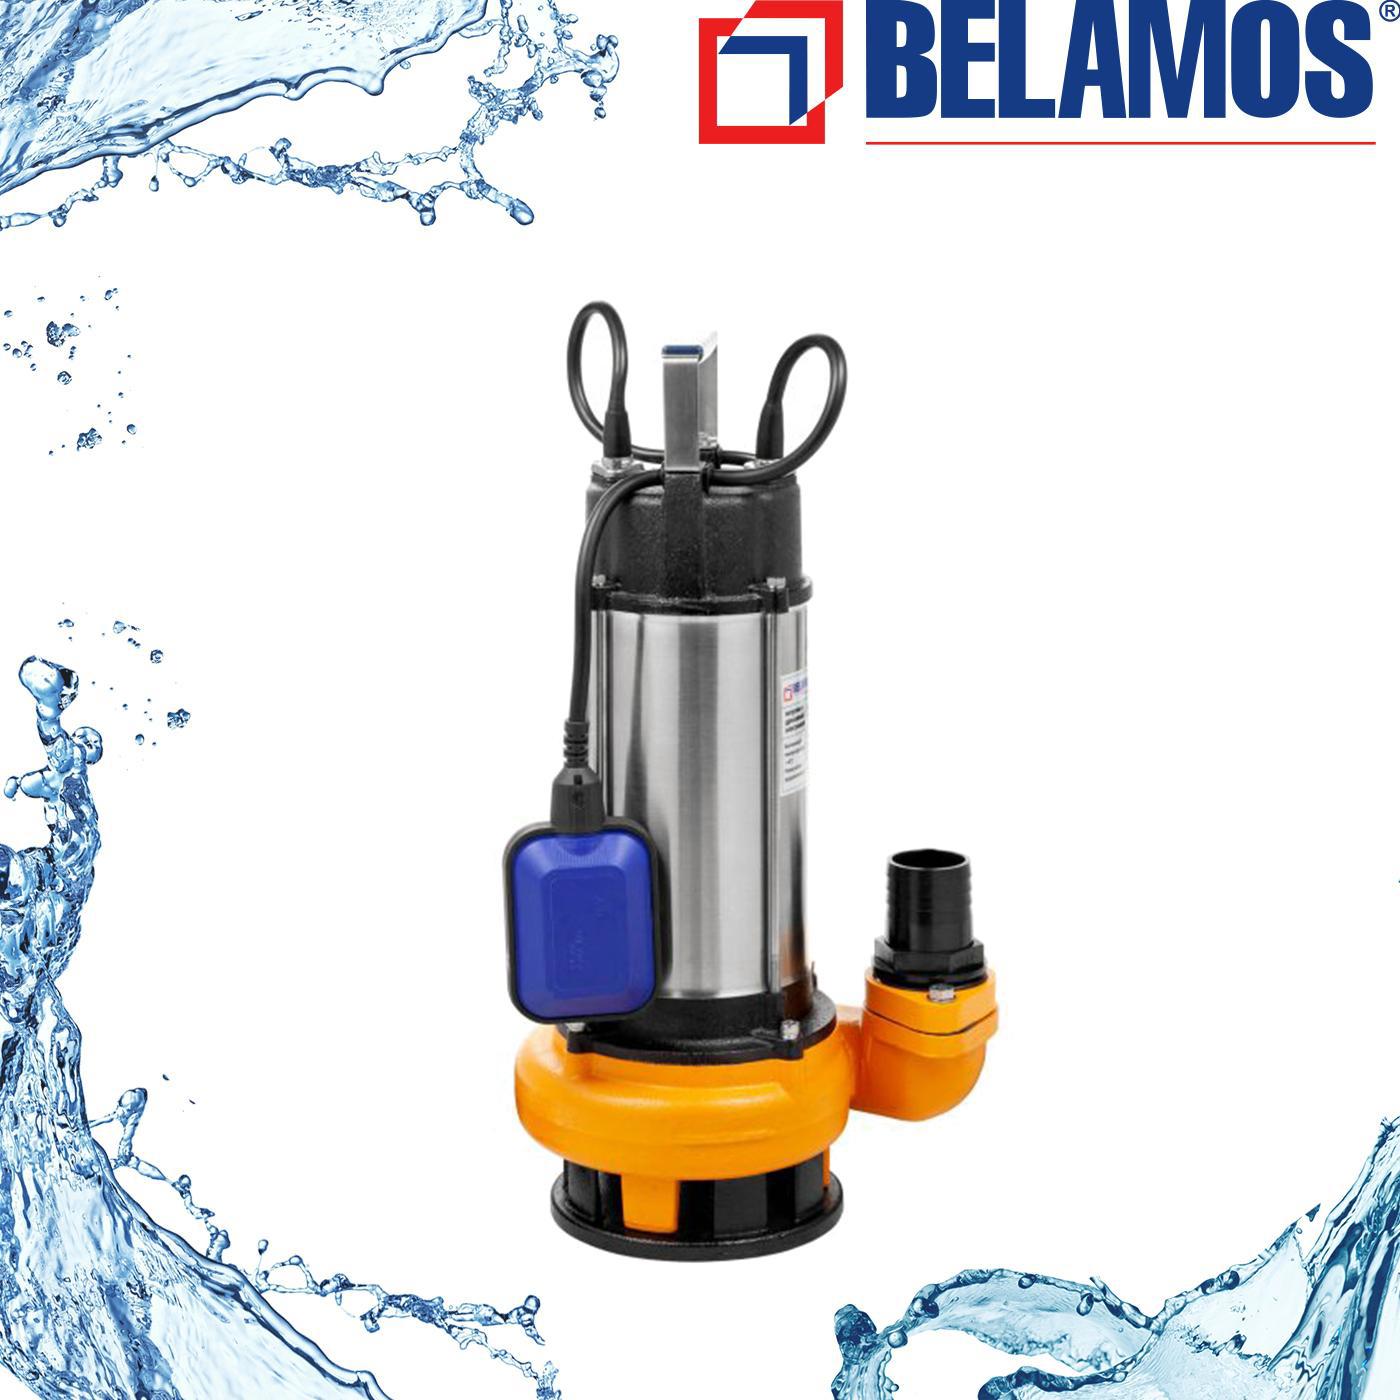  погружной дренажный Belamos Dwp грязная вода расход 26000 л/ч в .